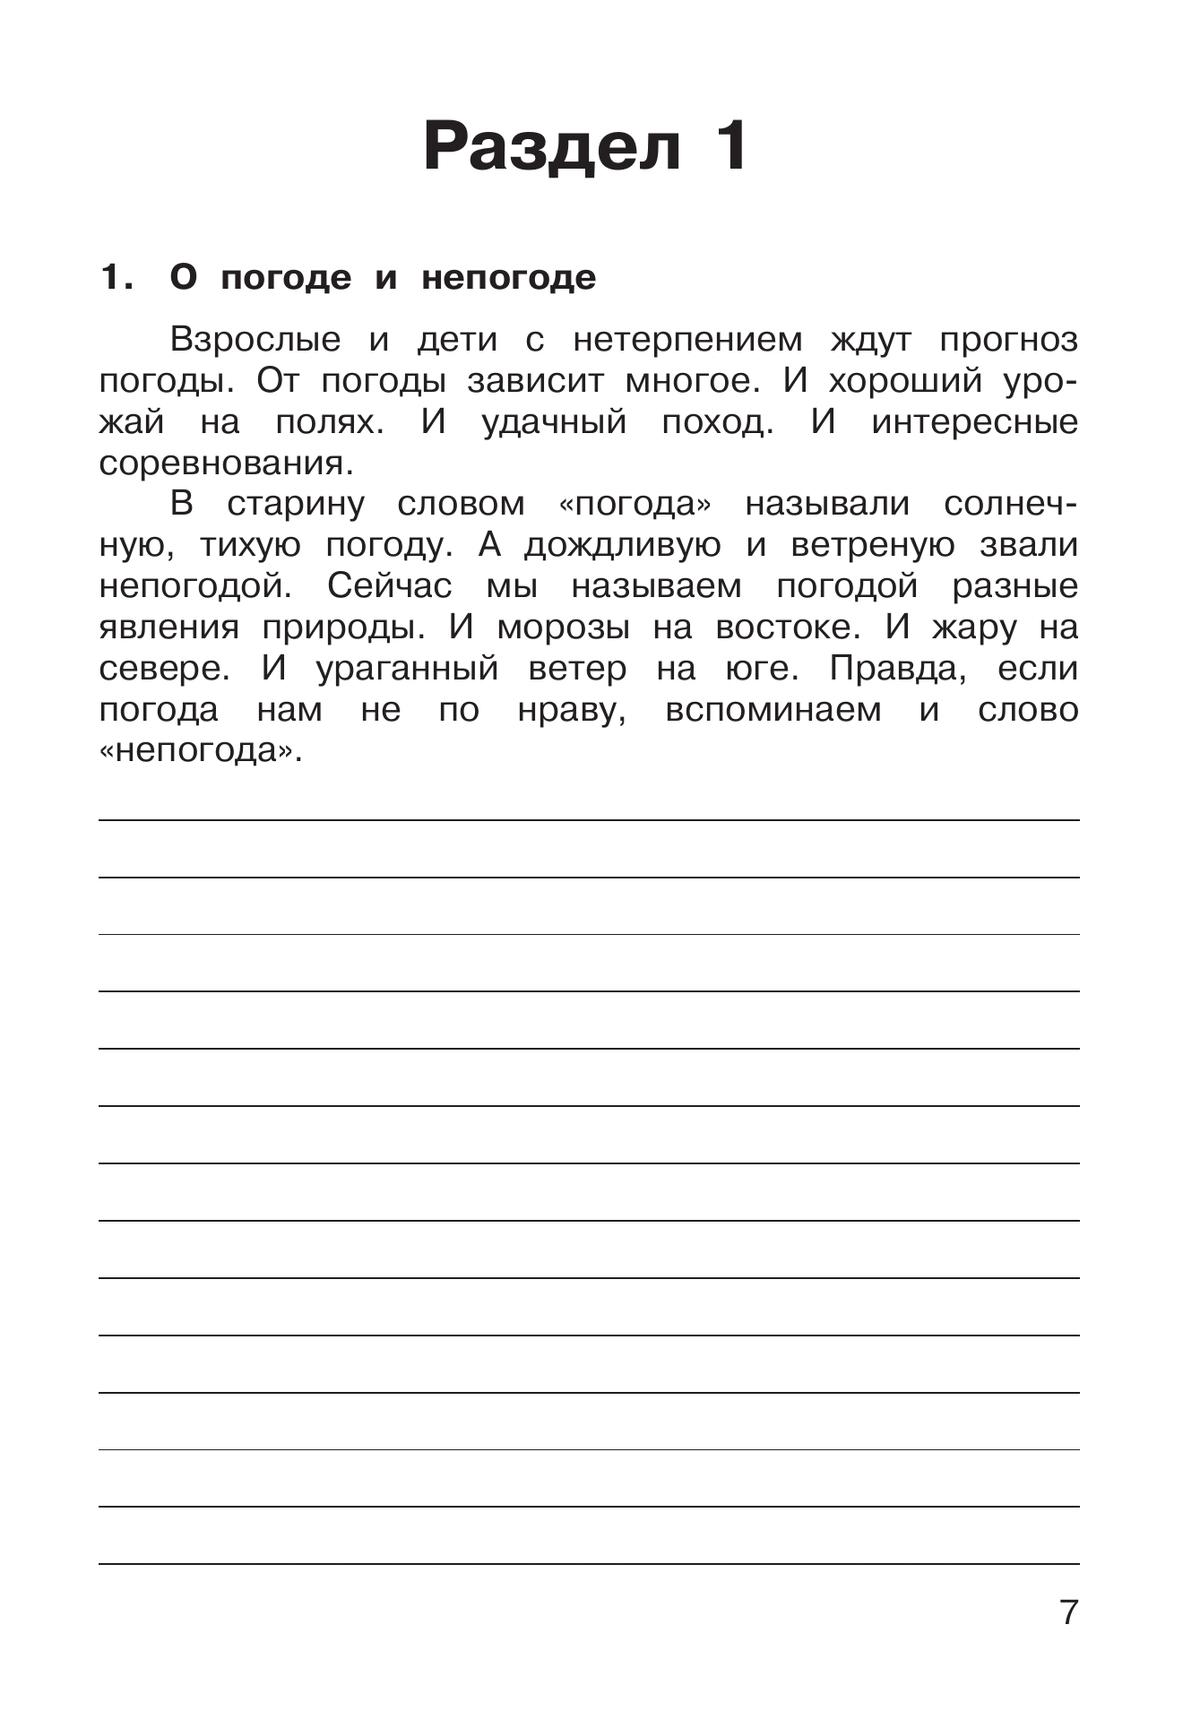 Русский язык. 3 класс. В 2 частях. Часть 1. Рабочая тетрадь к учебному пособию 2